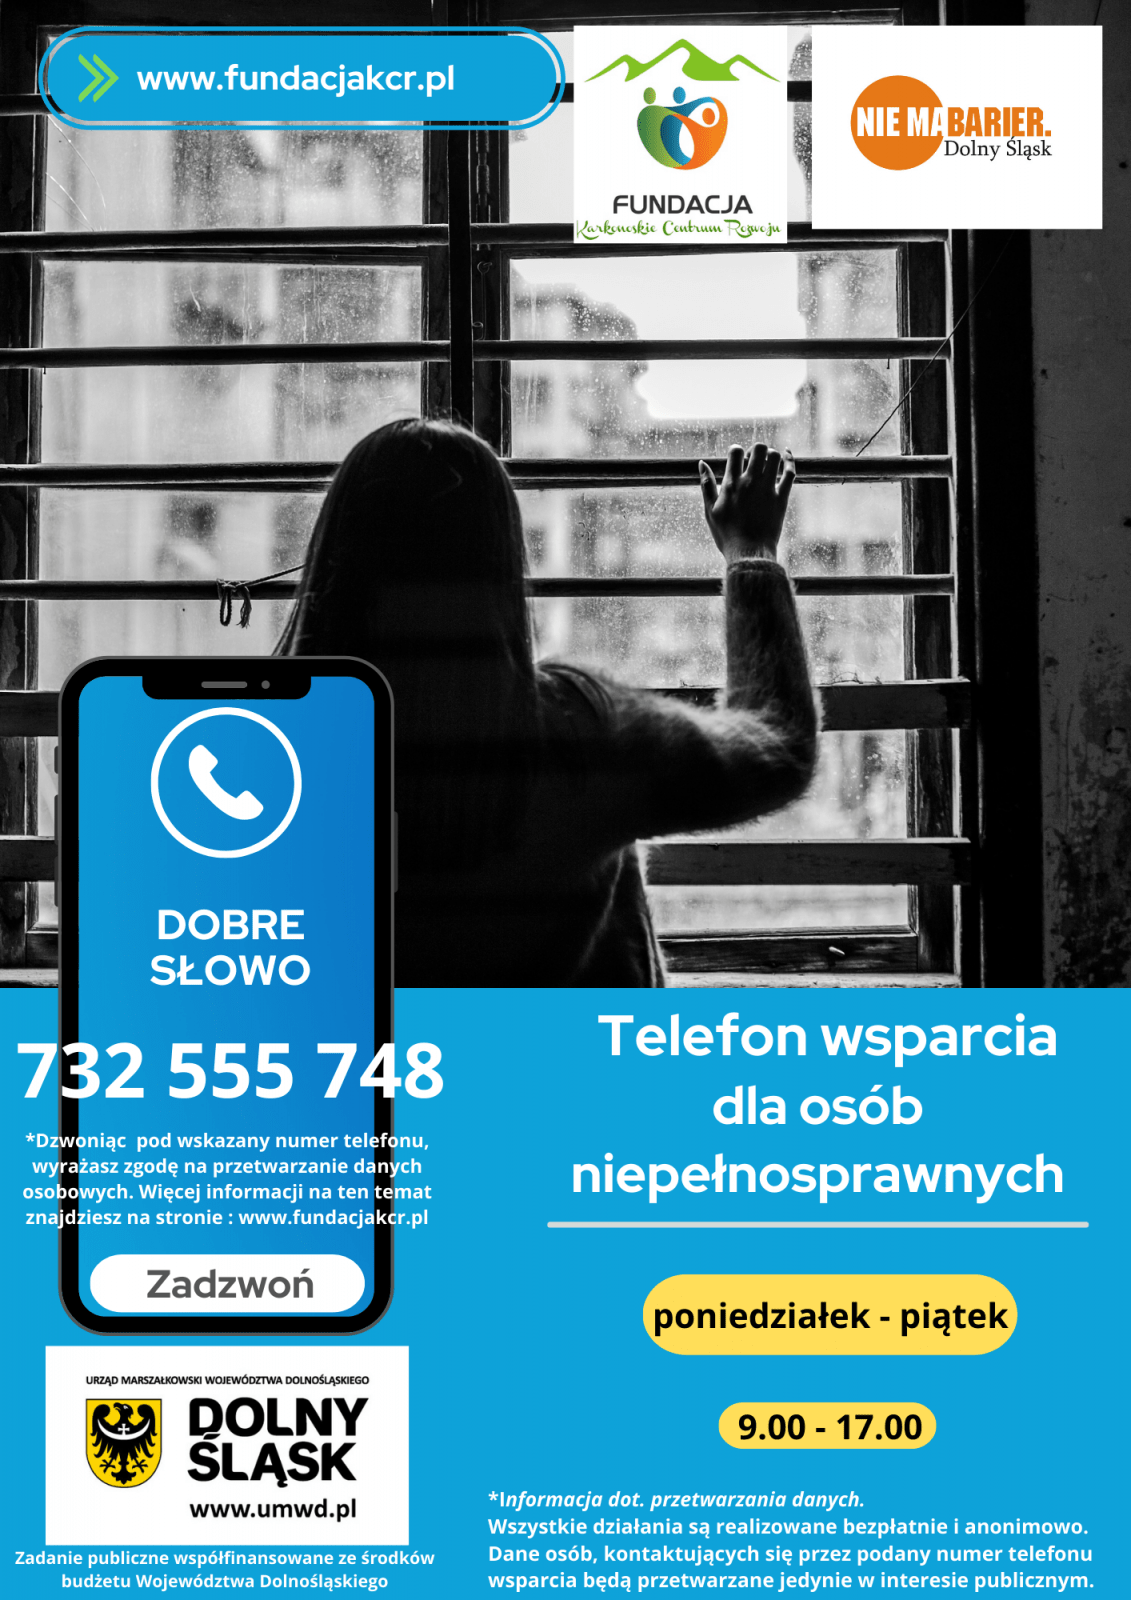 obrazek prezentujący ulotkę telefon wsparcia dla osób niepełnosprawnych, zadzwoń pod numer: 732 555 748